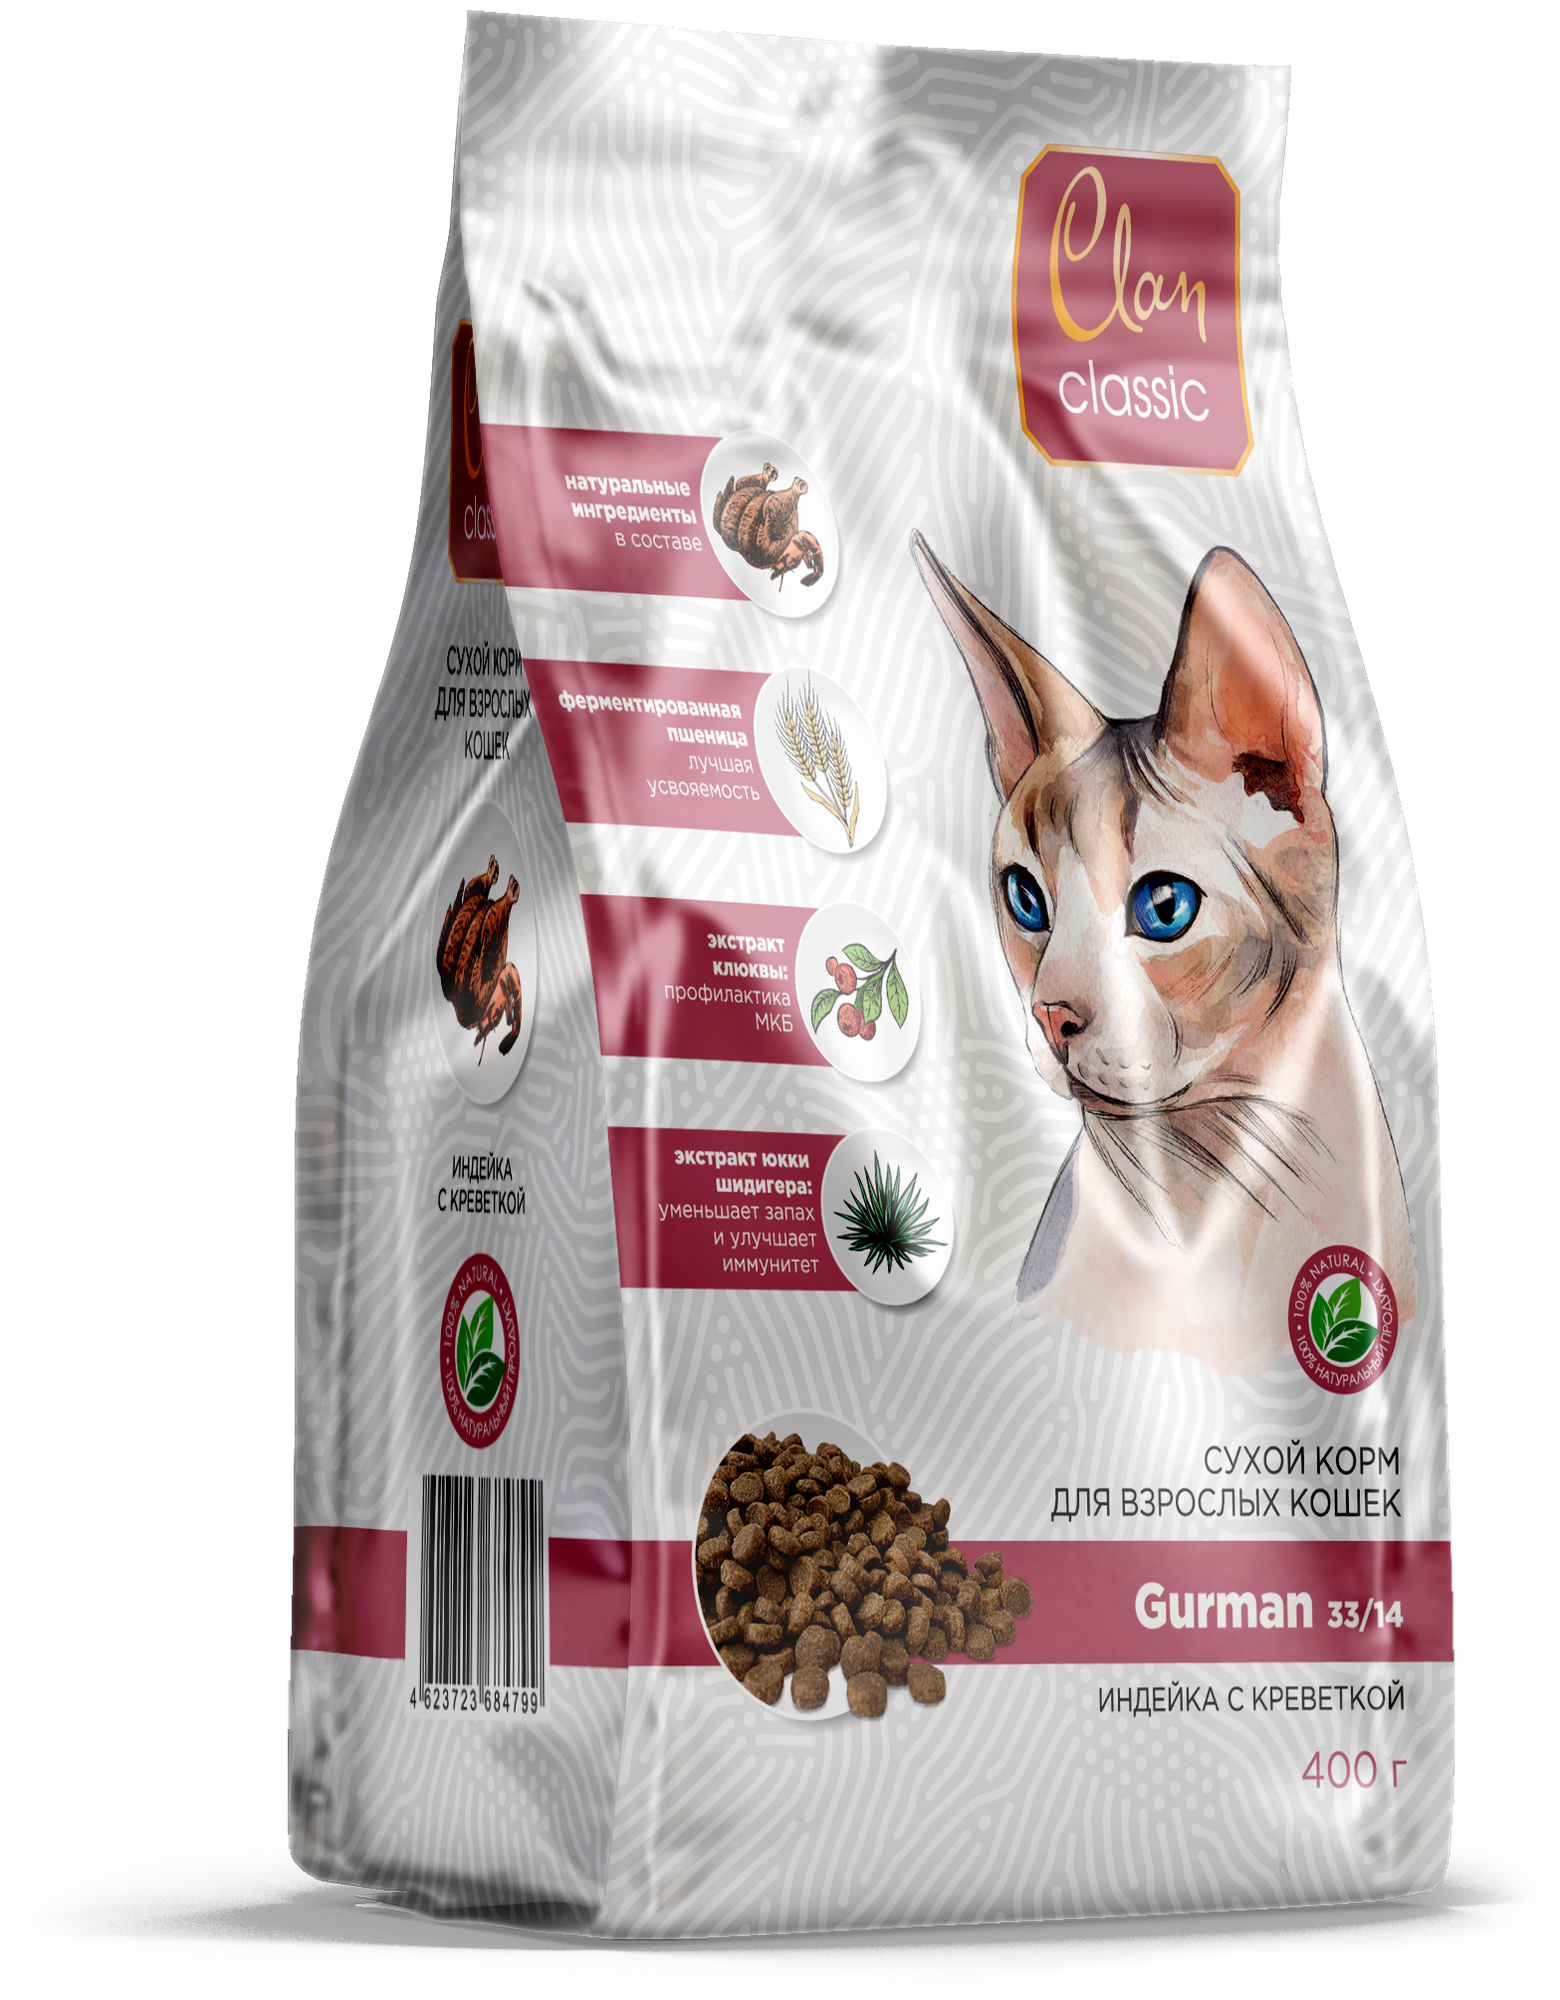 Сухой корм CLAN CLASSIC Gurman-33/14 индейка/креветки для кошек привередливых 0,4 кг